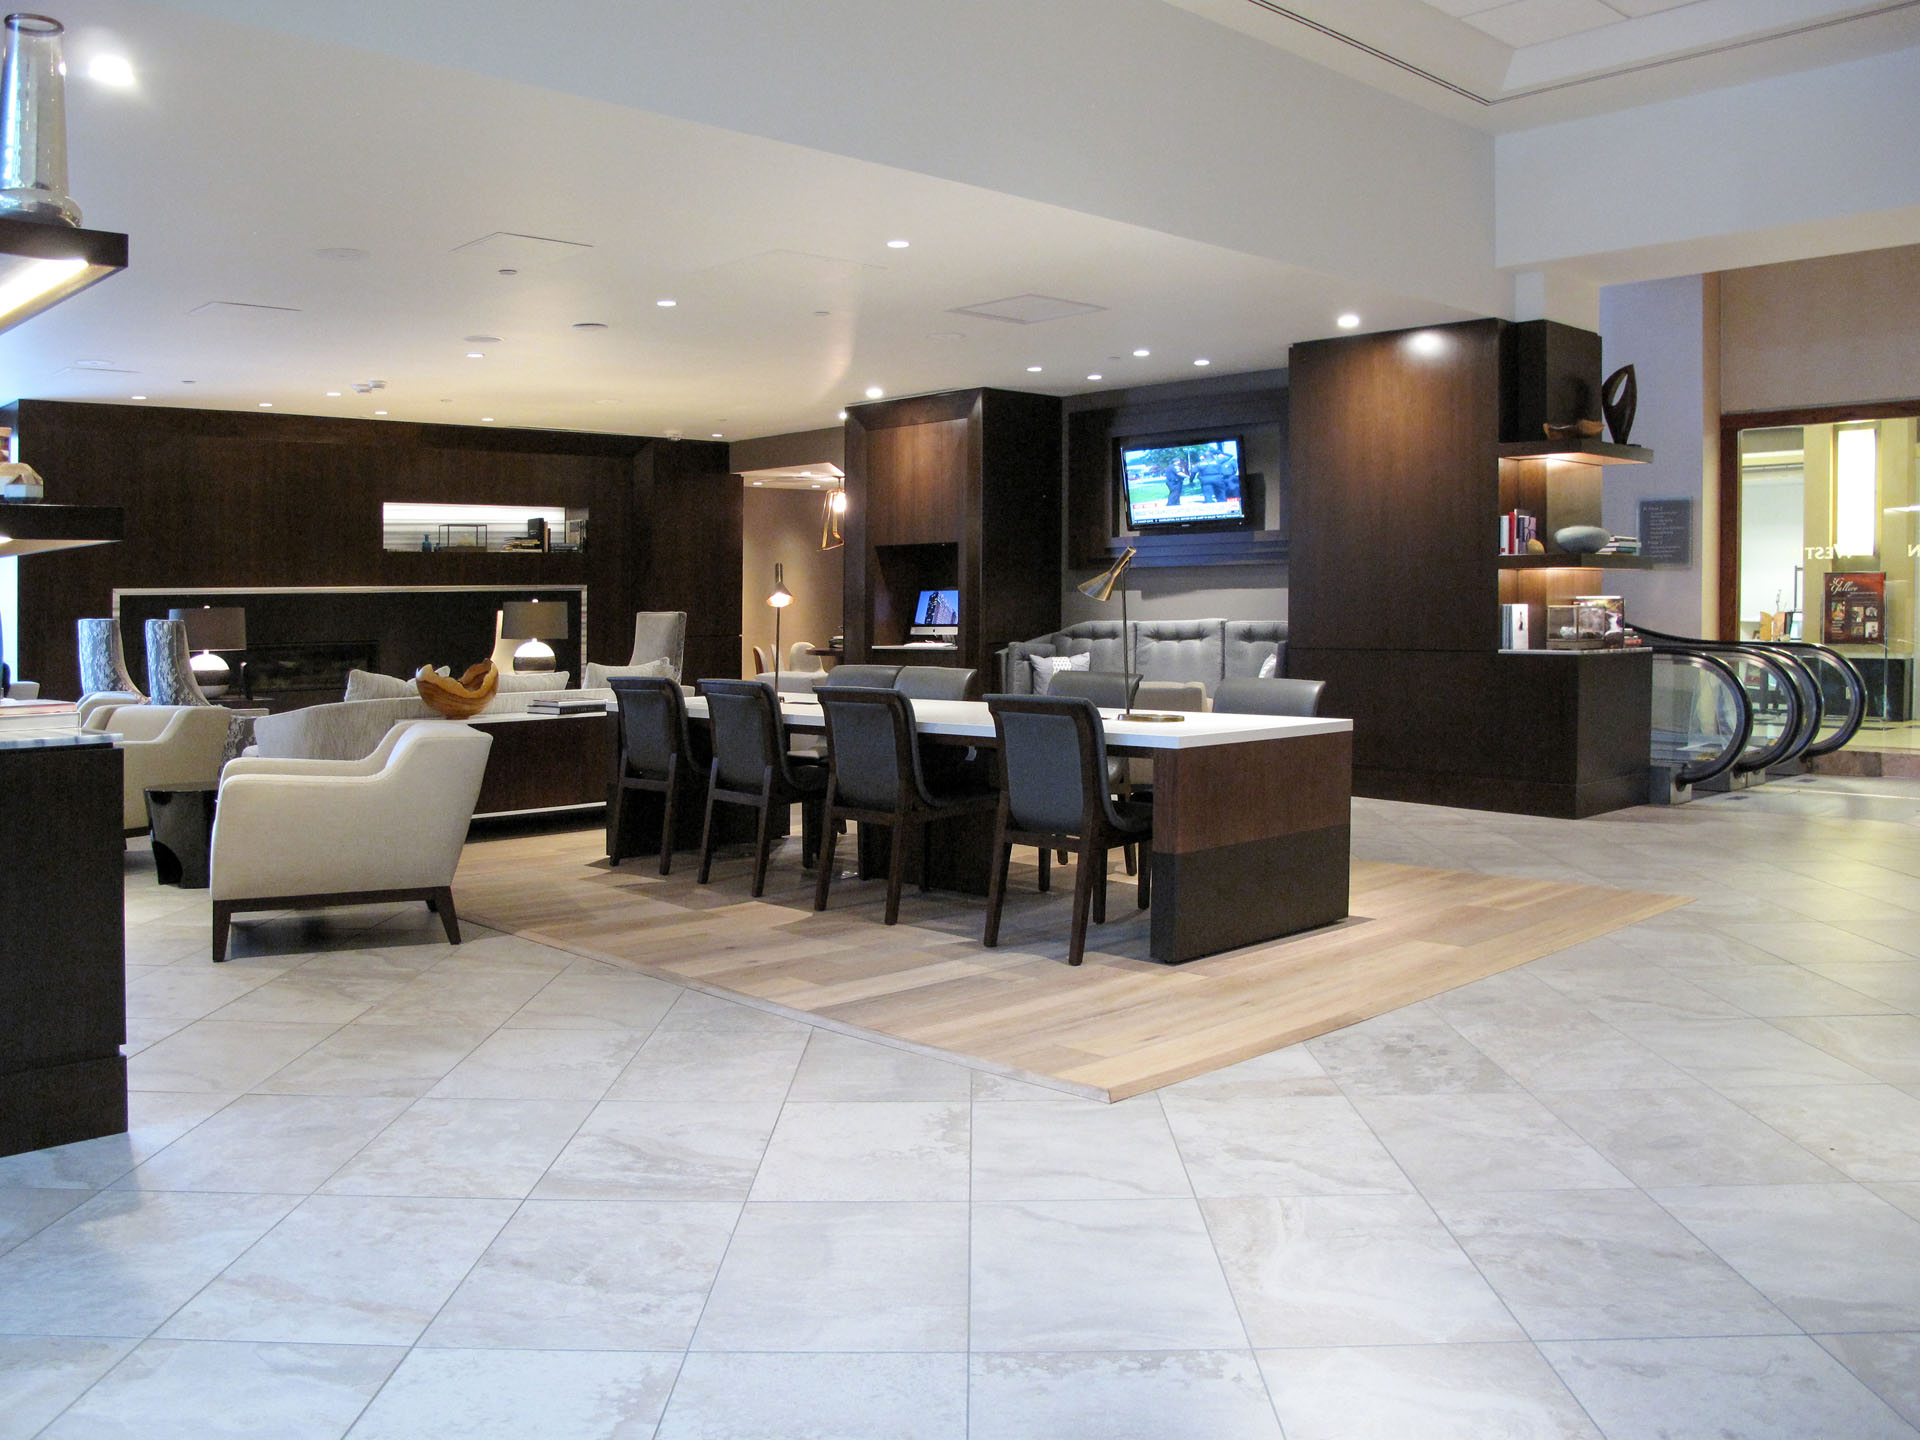 Westin Hotel Lobby & Bar | Rycon Construction, Inc.